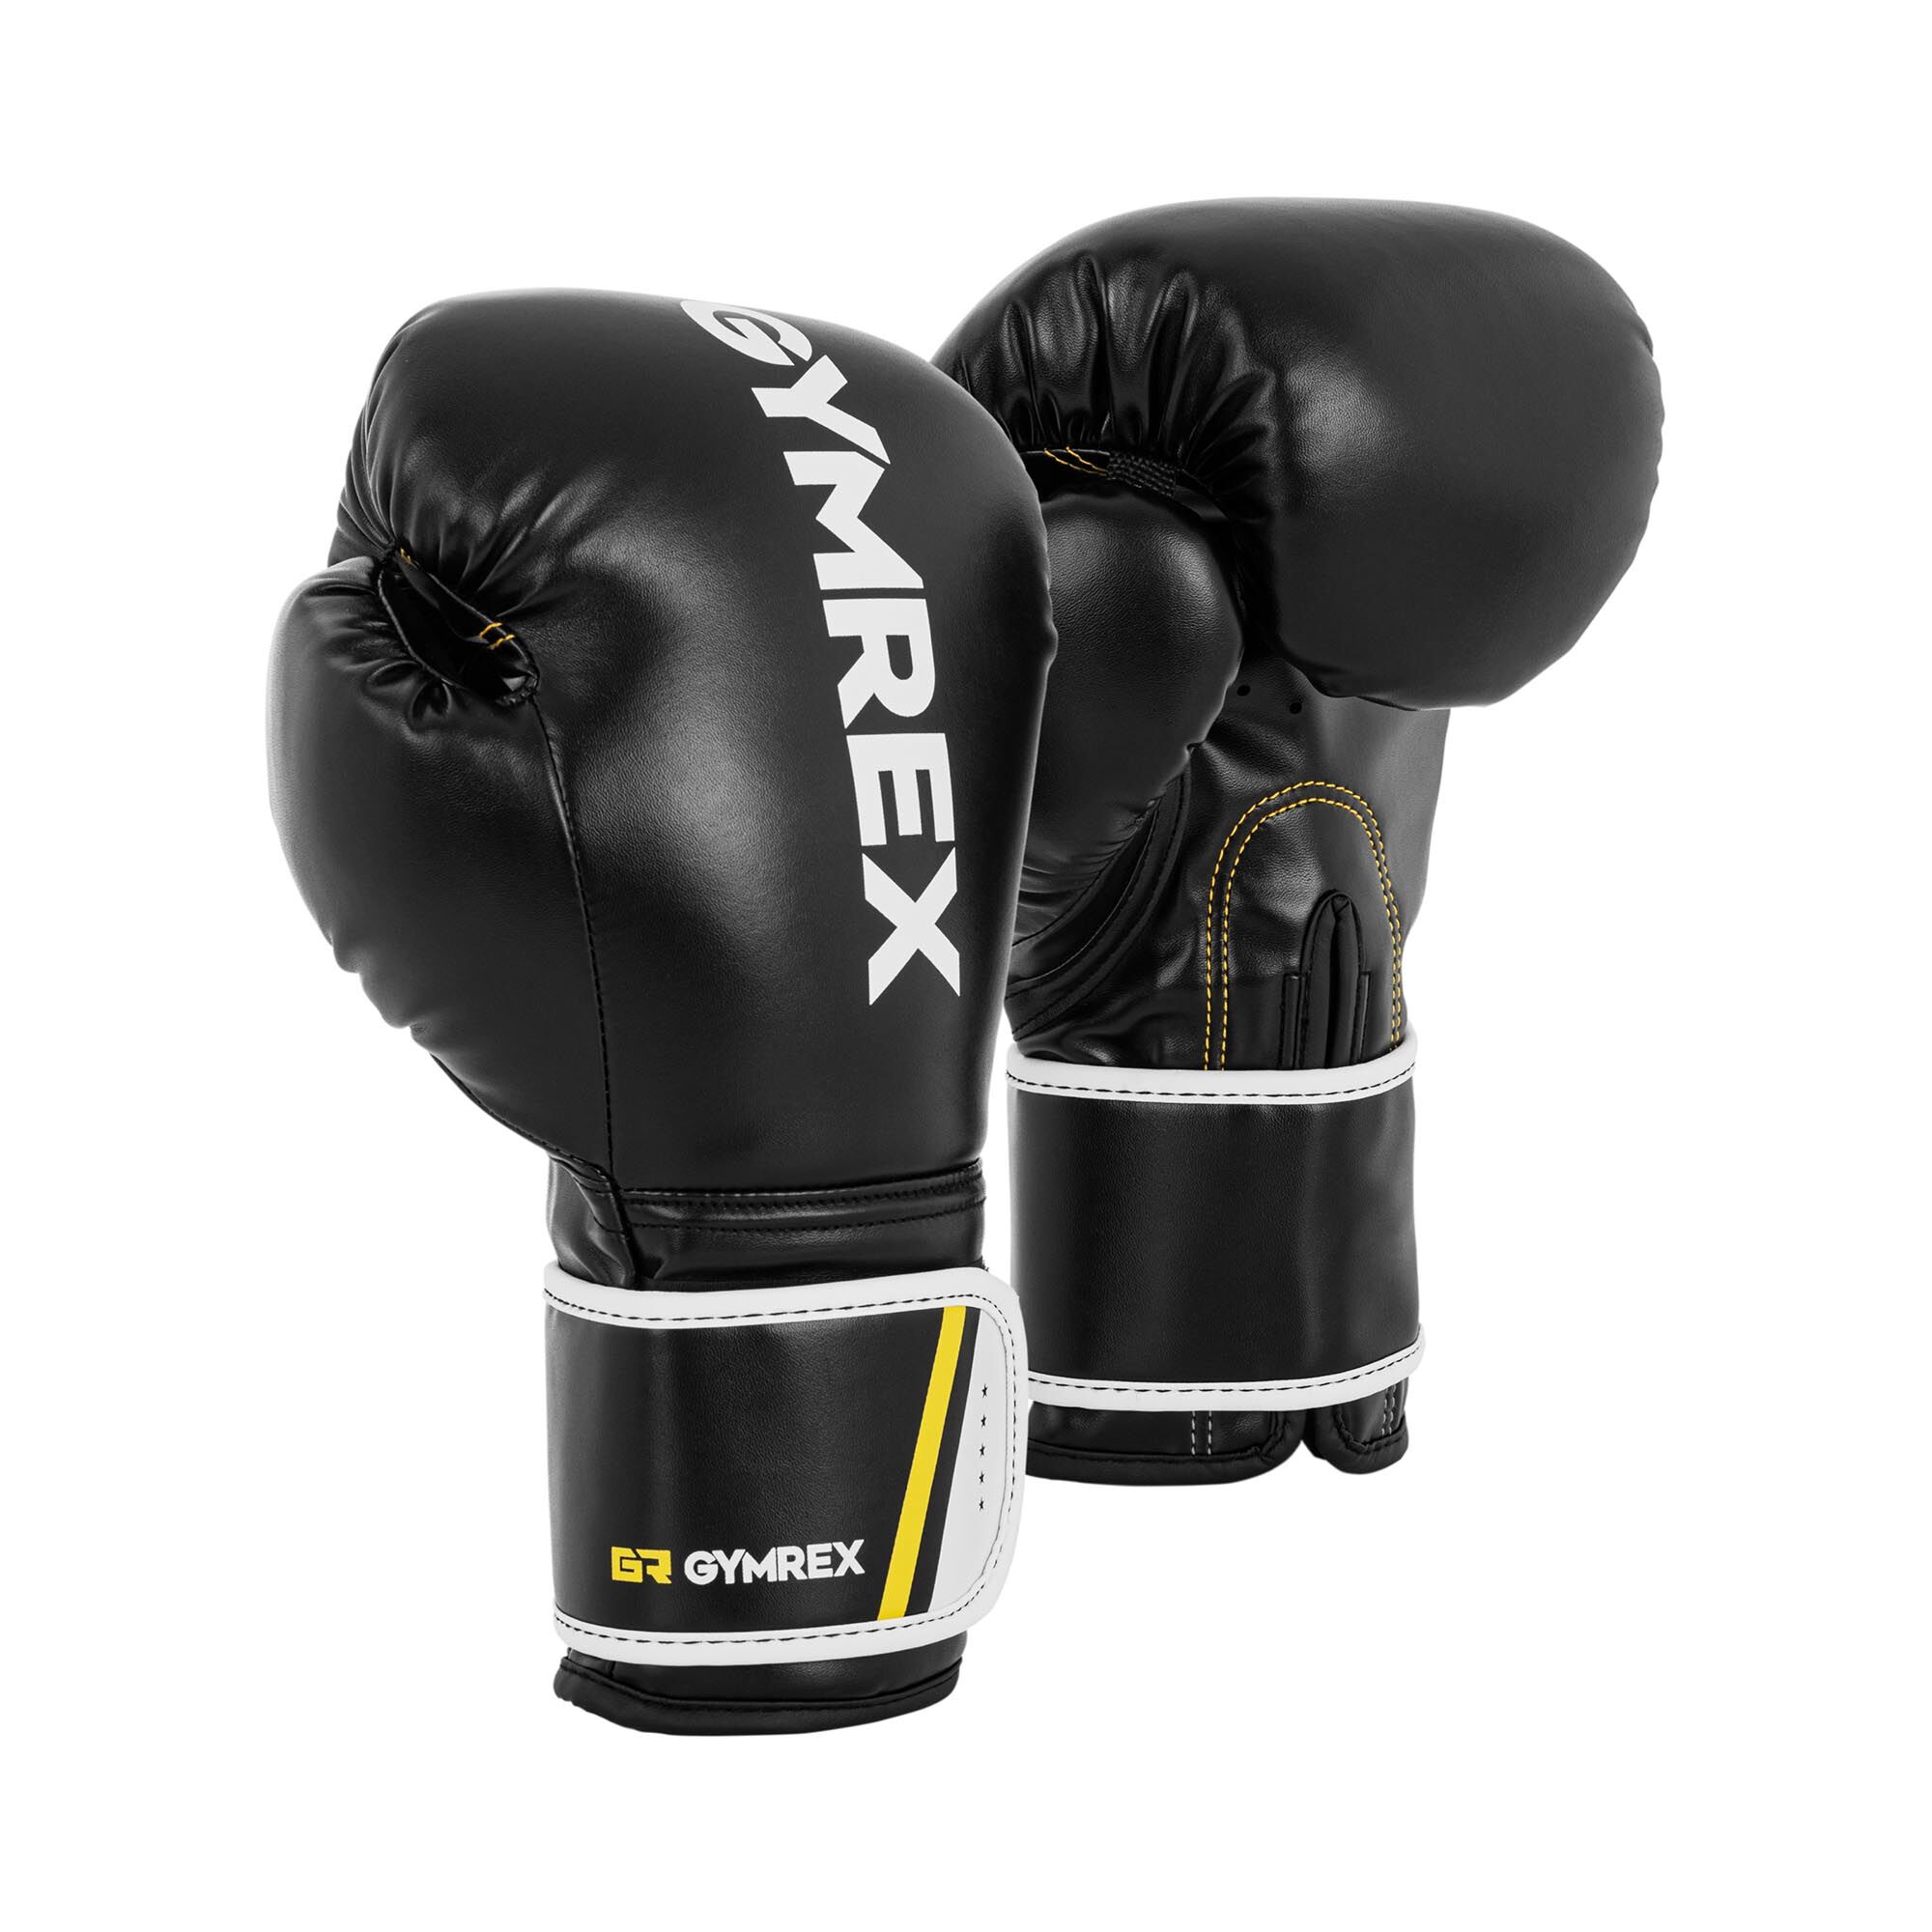 Gymrex Boxerské rukavice - 12 oz - černé GR-BG 12BB